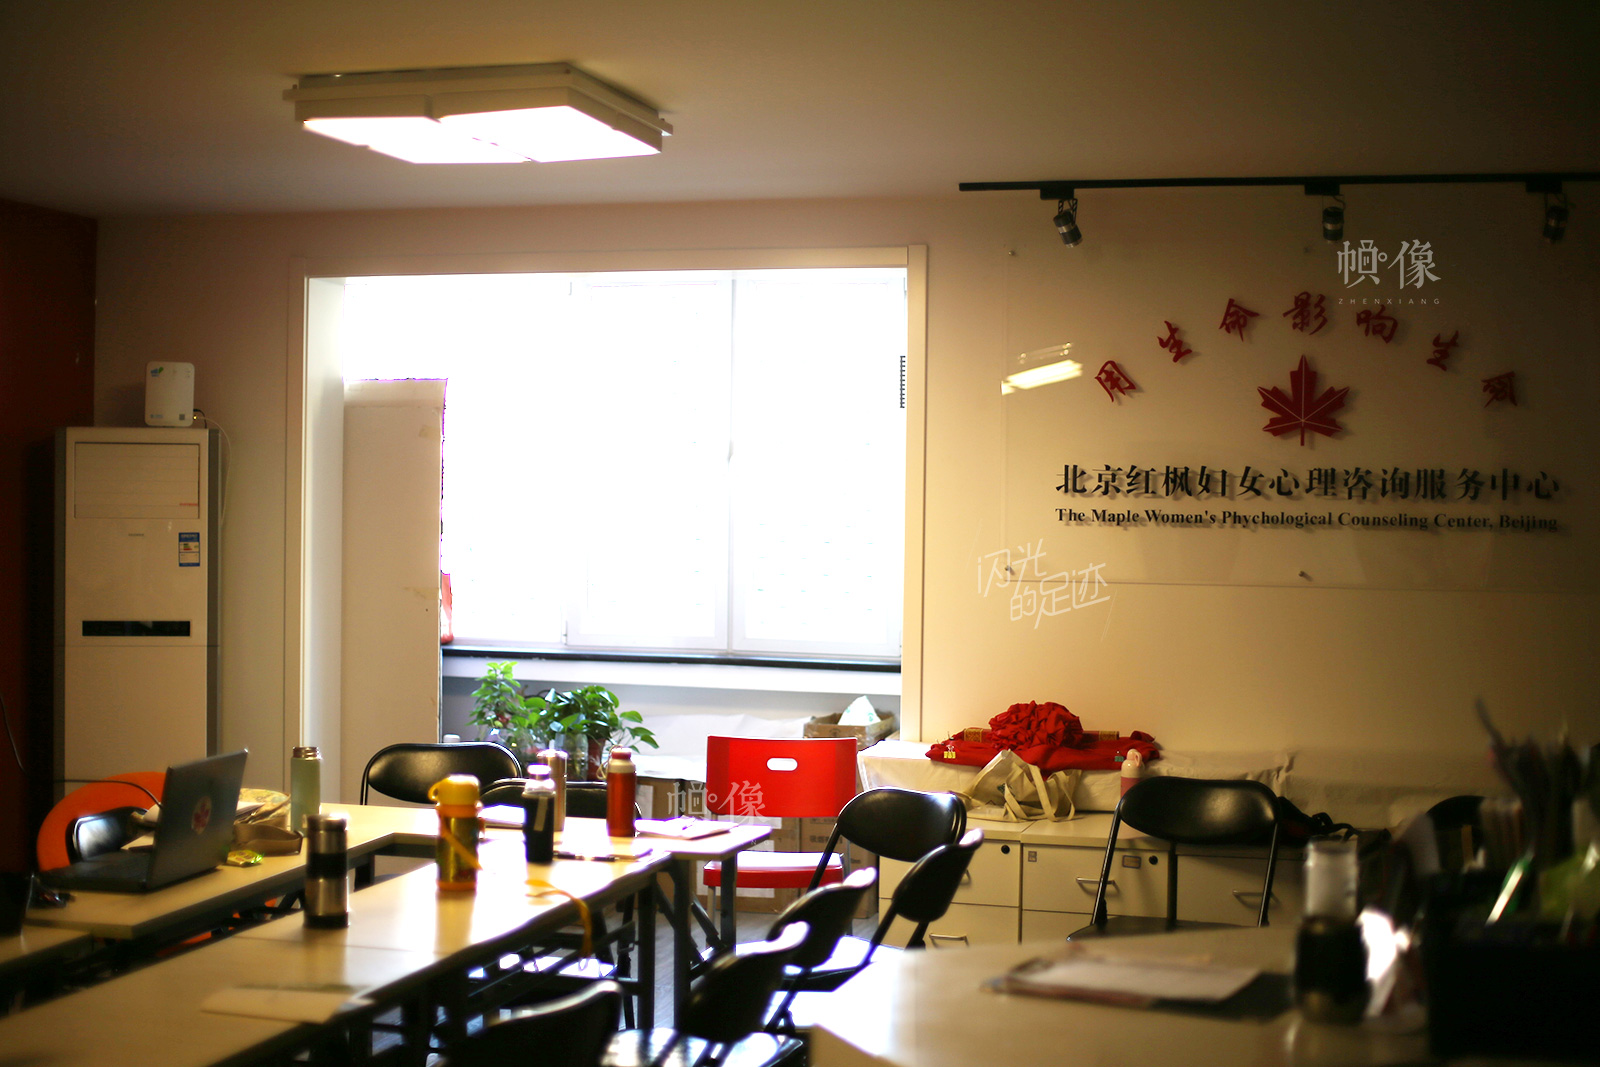 北京紅楓婦女心理諮詢服務中心成立於1988年10月，1992年紅楓婦女心理公益熱線正式開通，是由婦女問題專家王行娟女士以及一批熱心於婦女事業的知識女性自願組織起來的非營利性民間婦女組織。中國網記者 吳聞達 攝